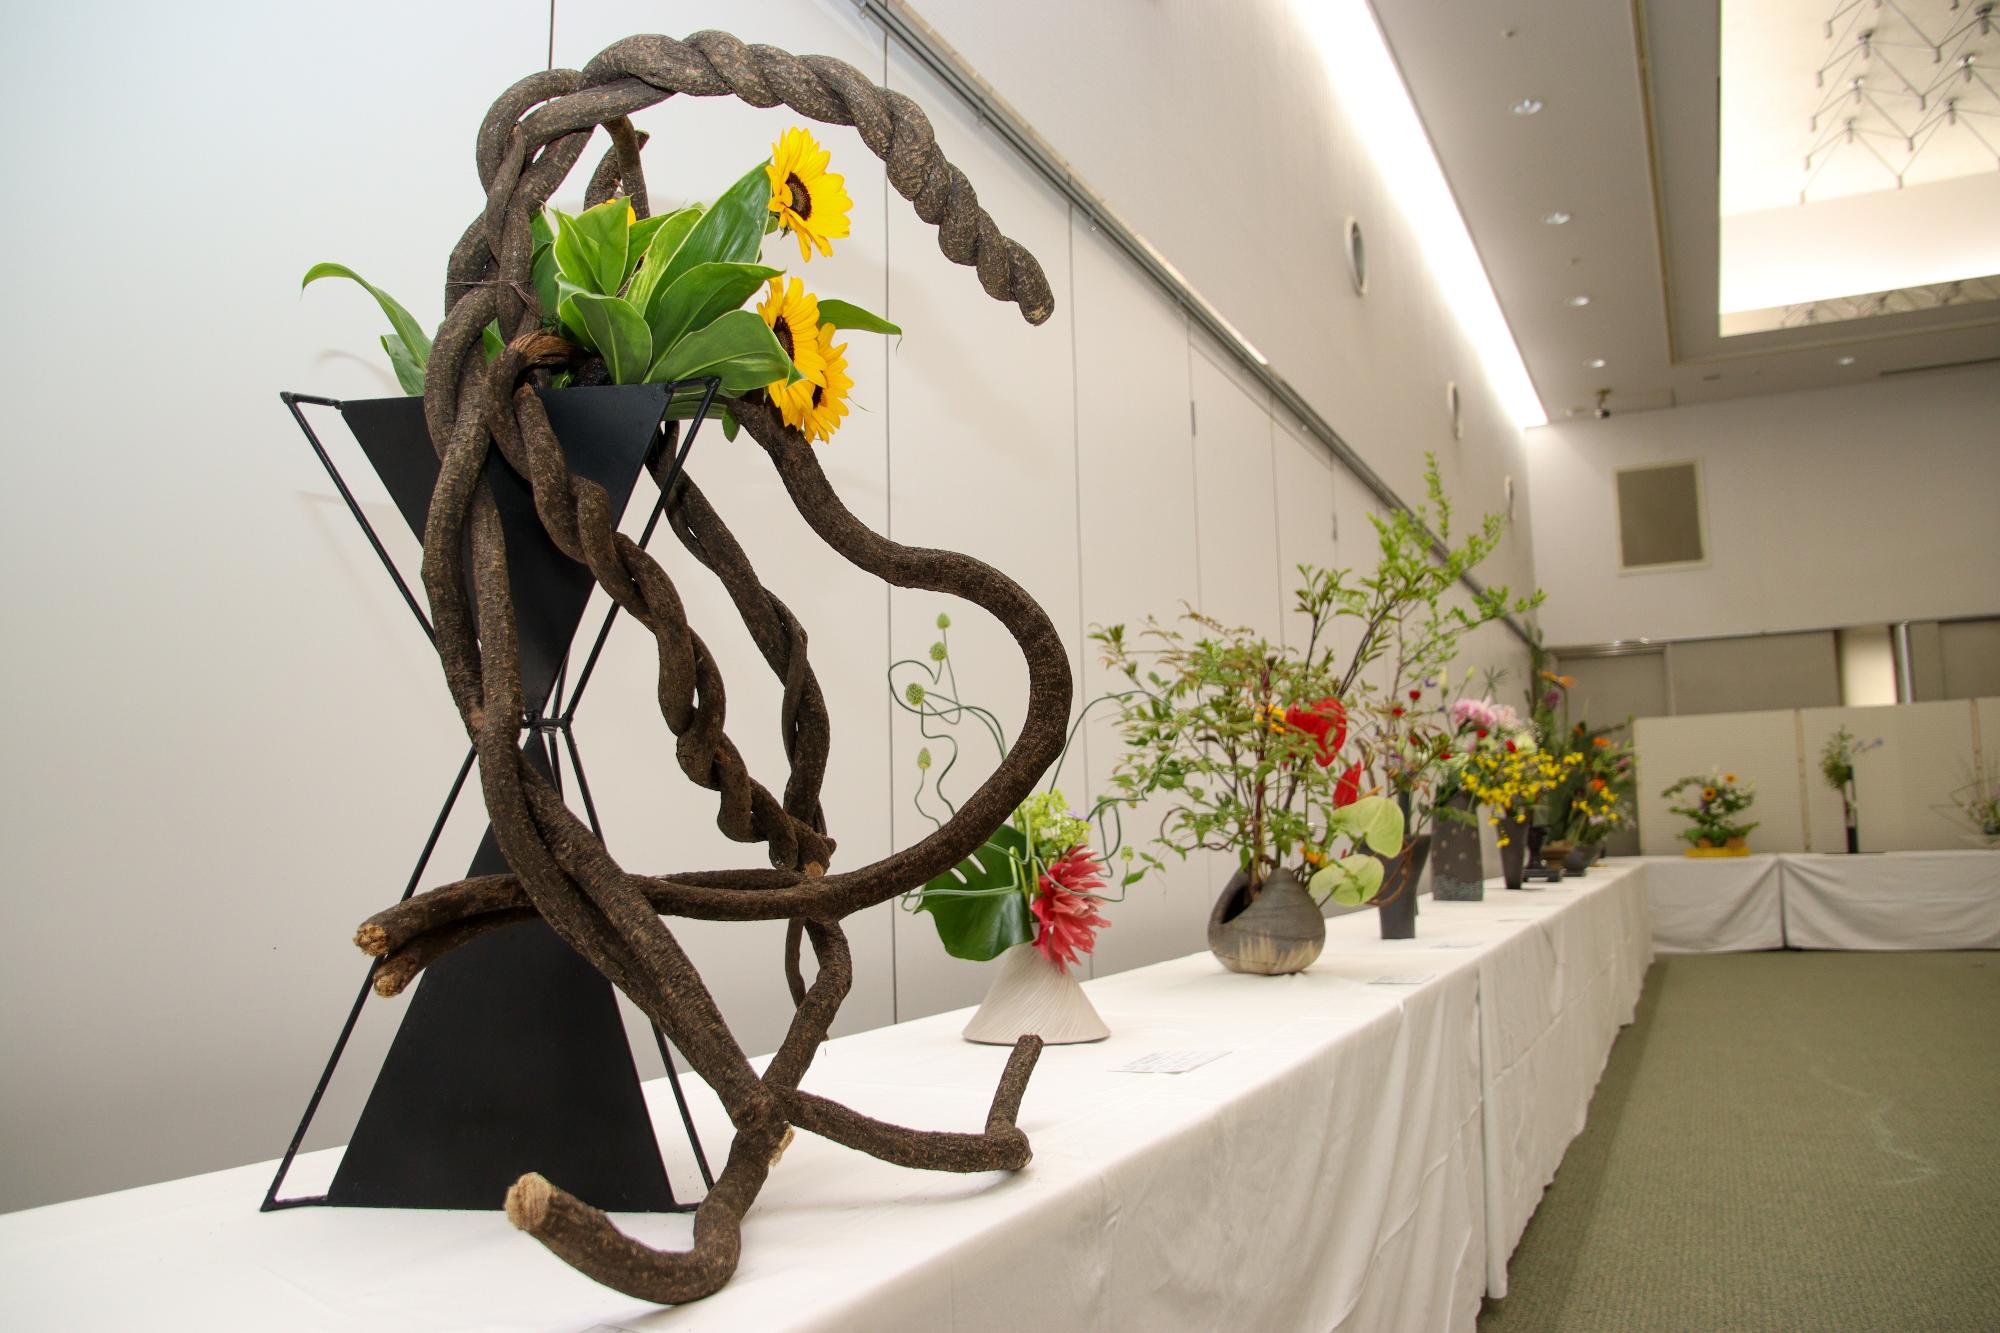 市総合芸術祭に出展された「生け花」の作品の数々